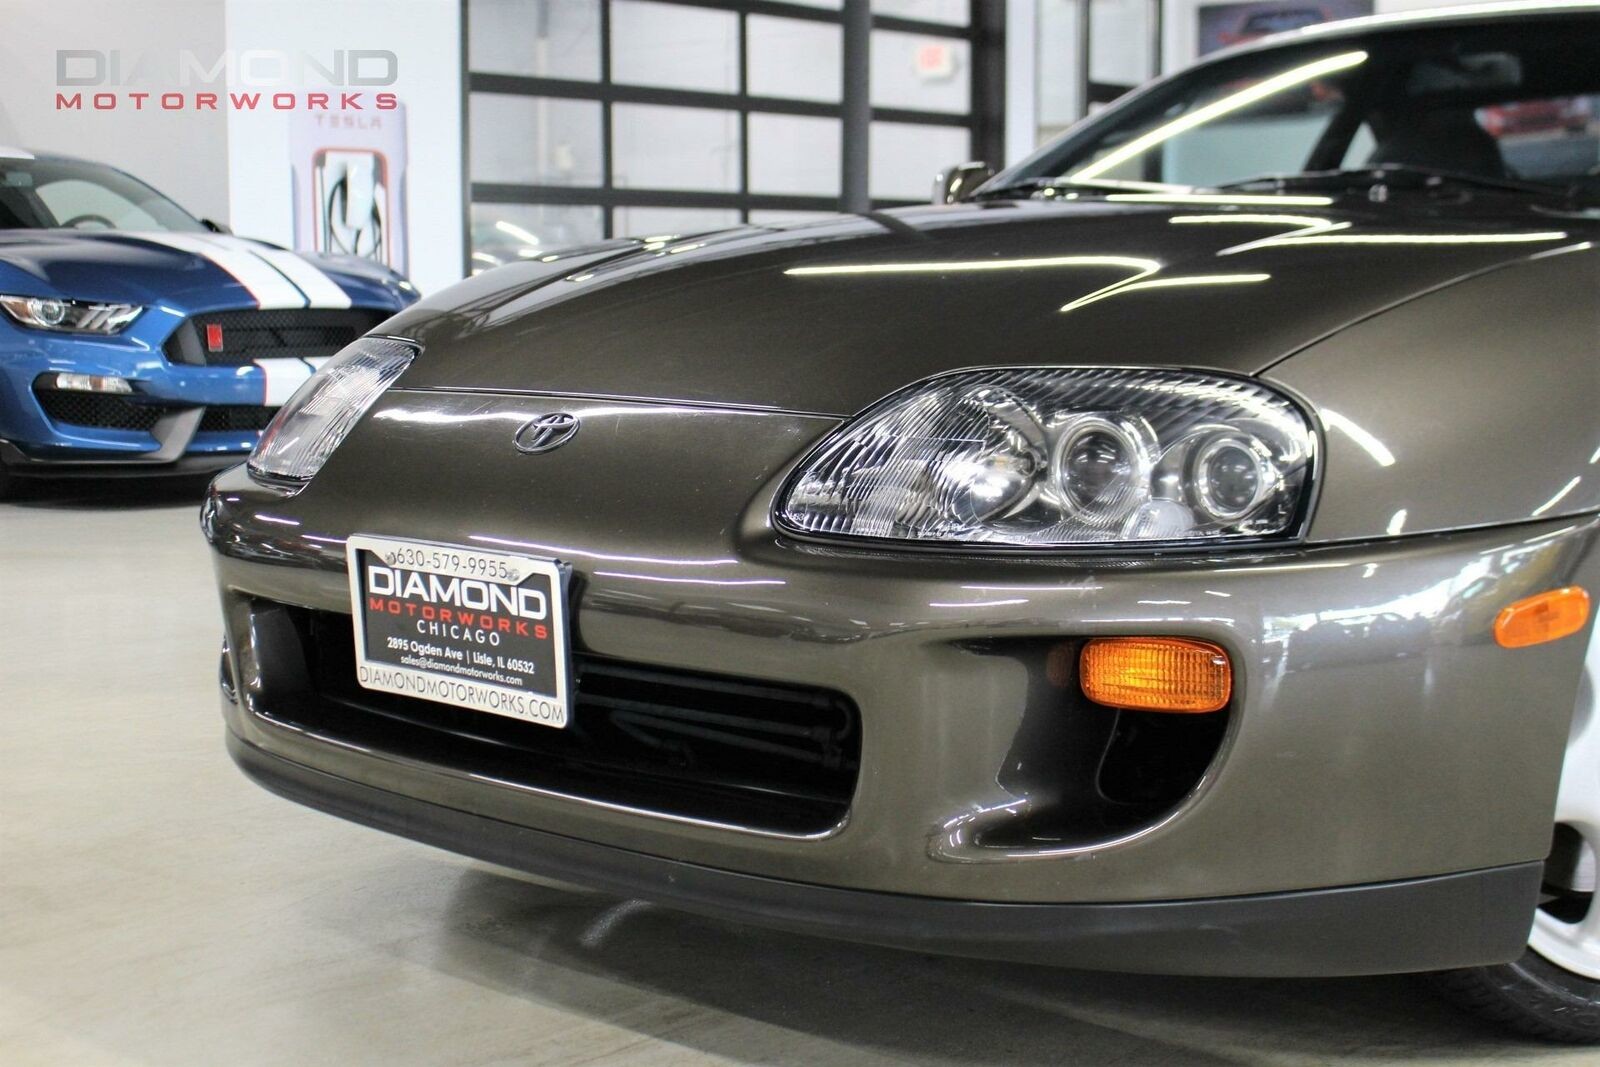 Toyota Supra 1993 года выпуска выставлена на продажу